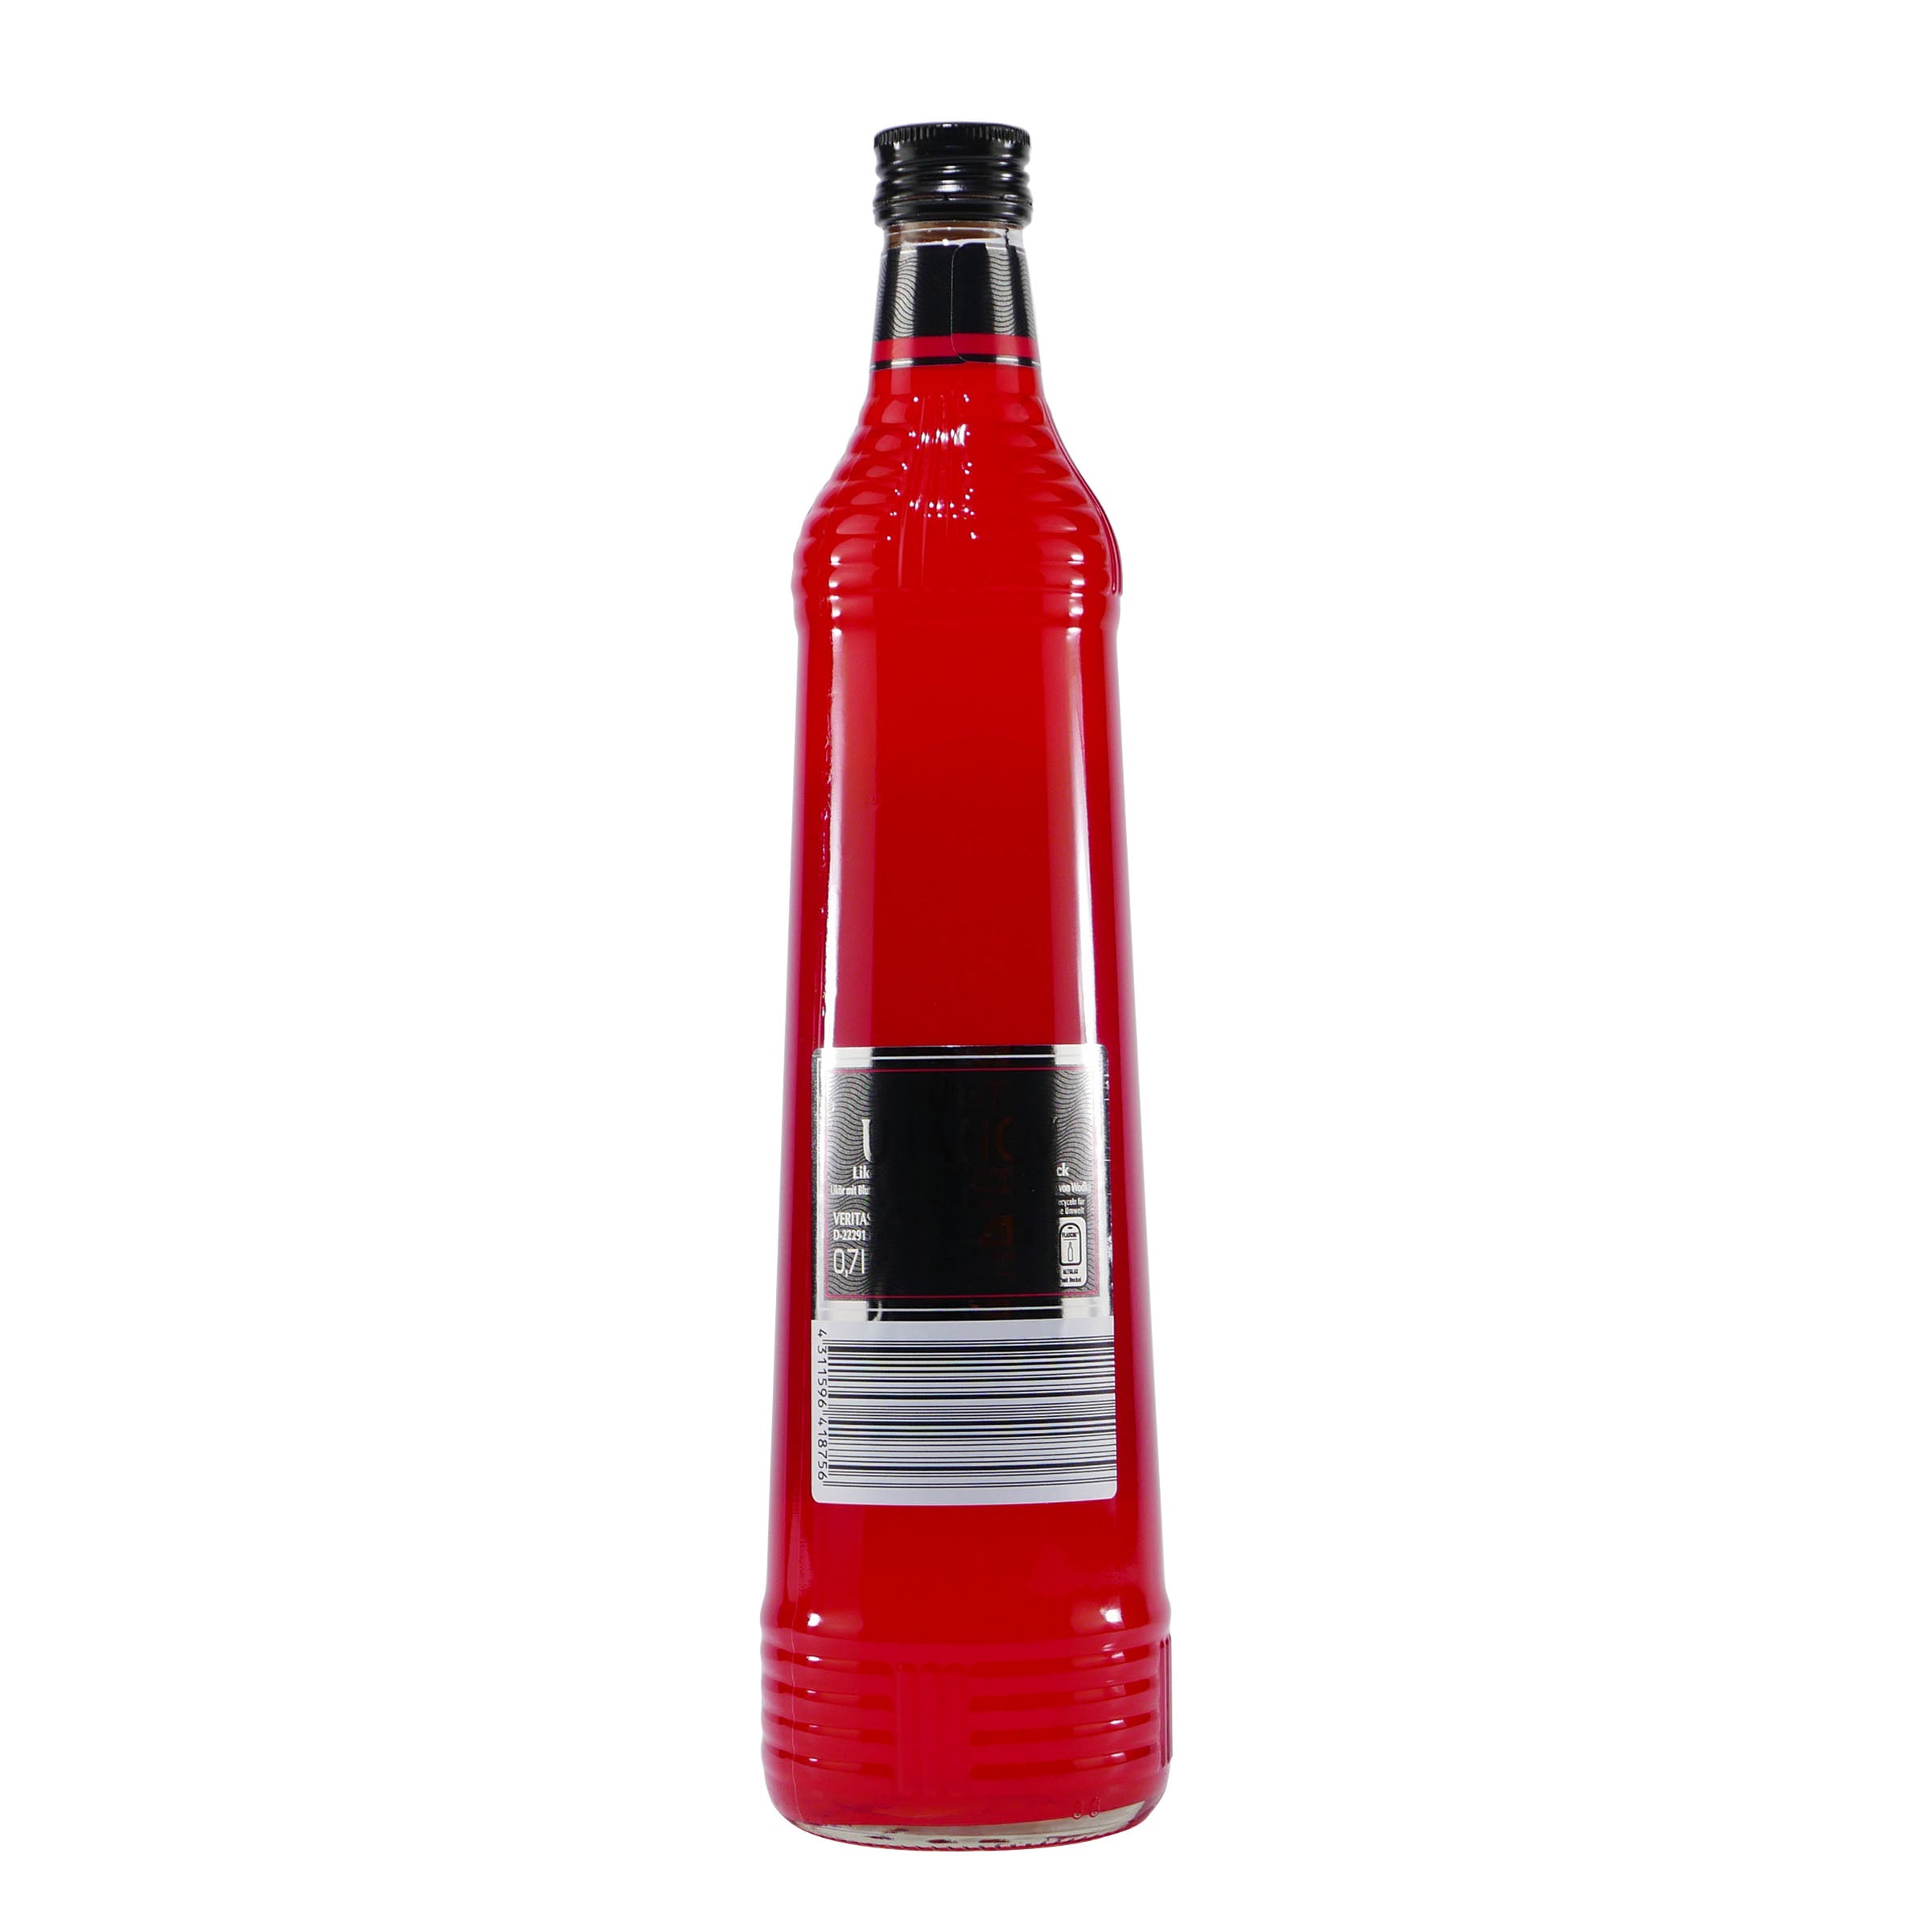 Fürst Uranov Red Blutorange Likör mit Vodka (6 x 0,7L)